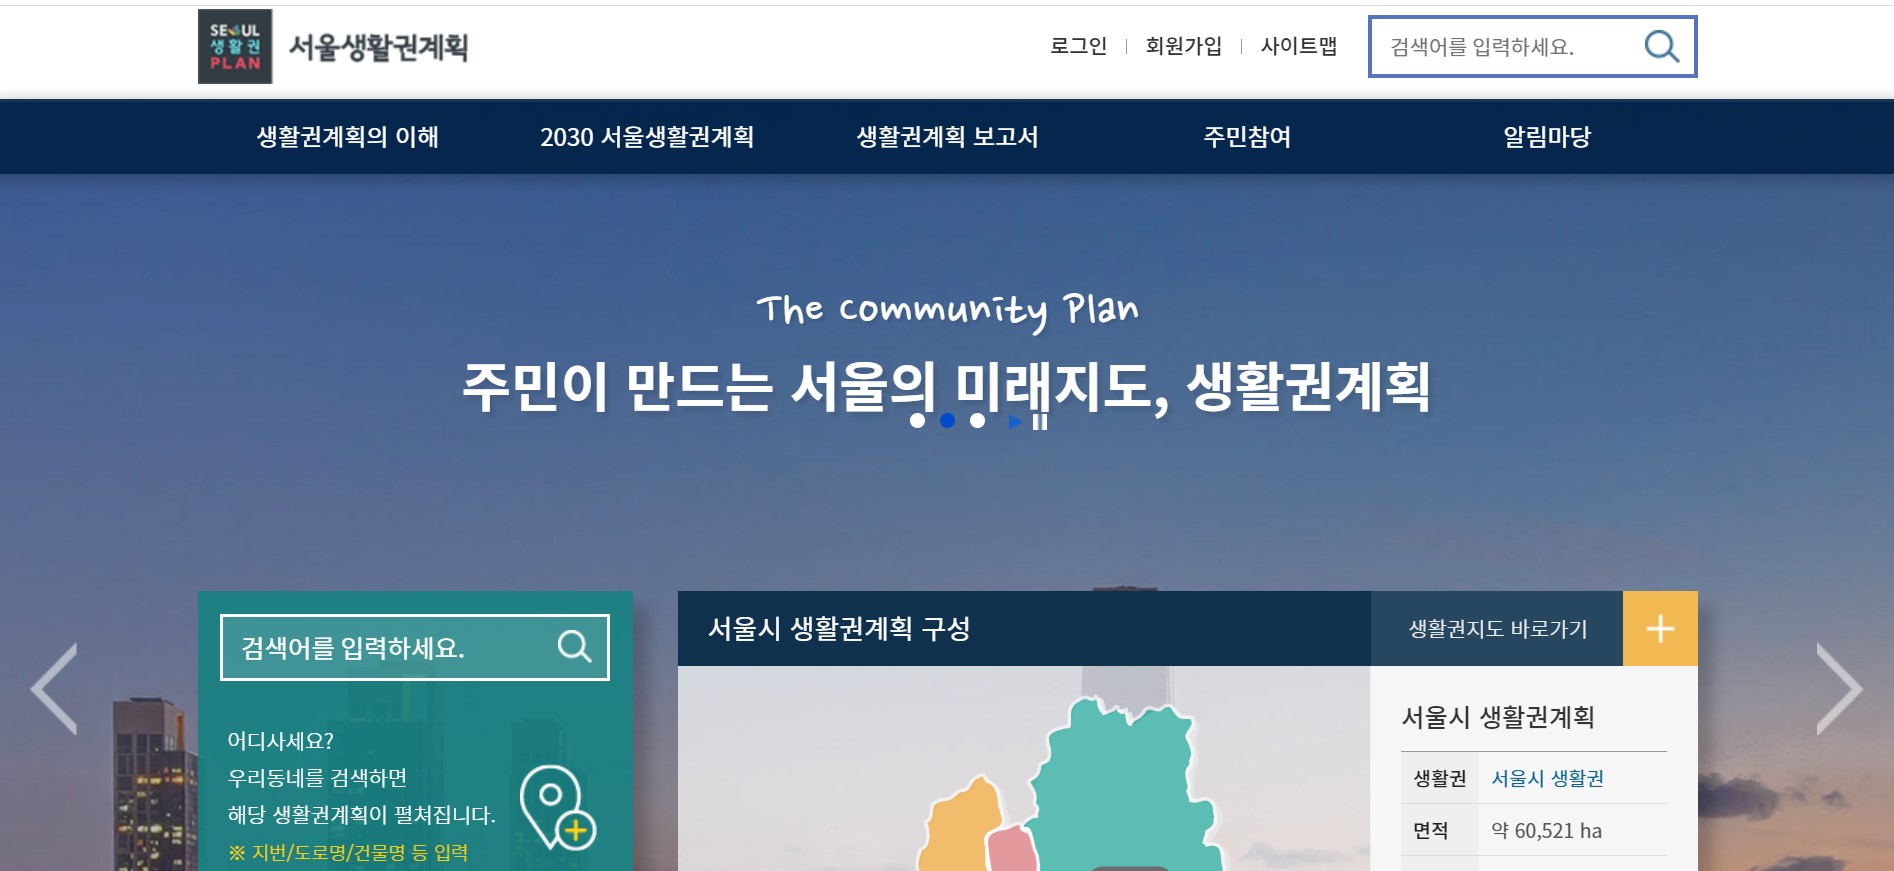 서울시 생활권 계획 홈페이지.